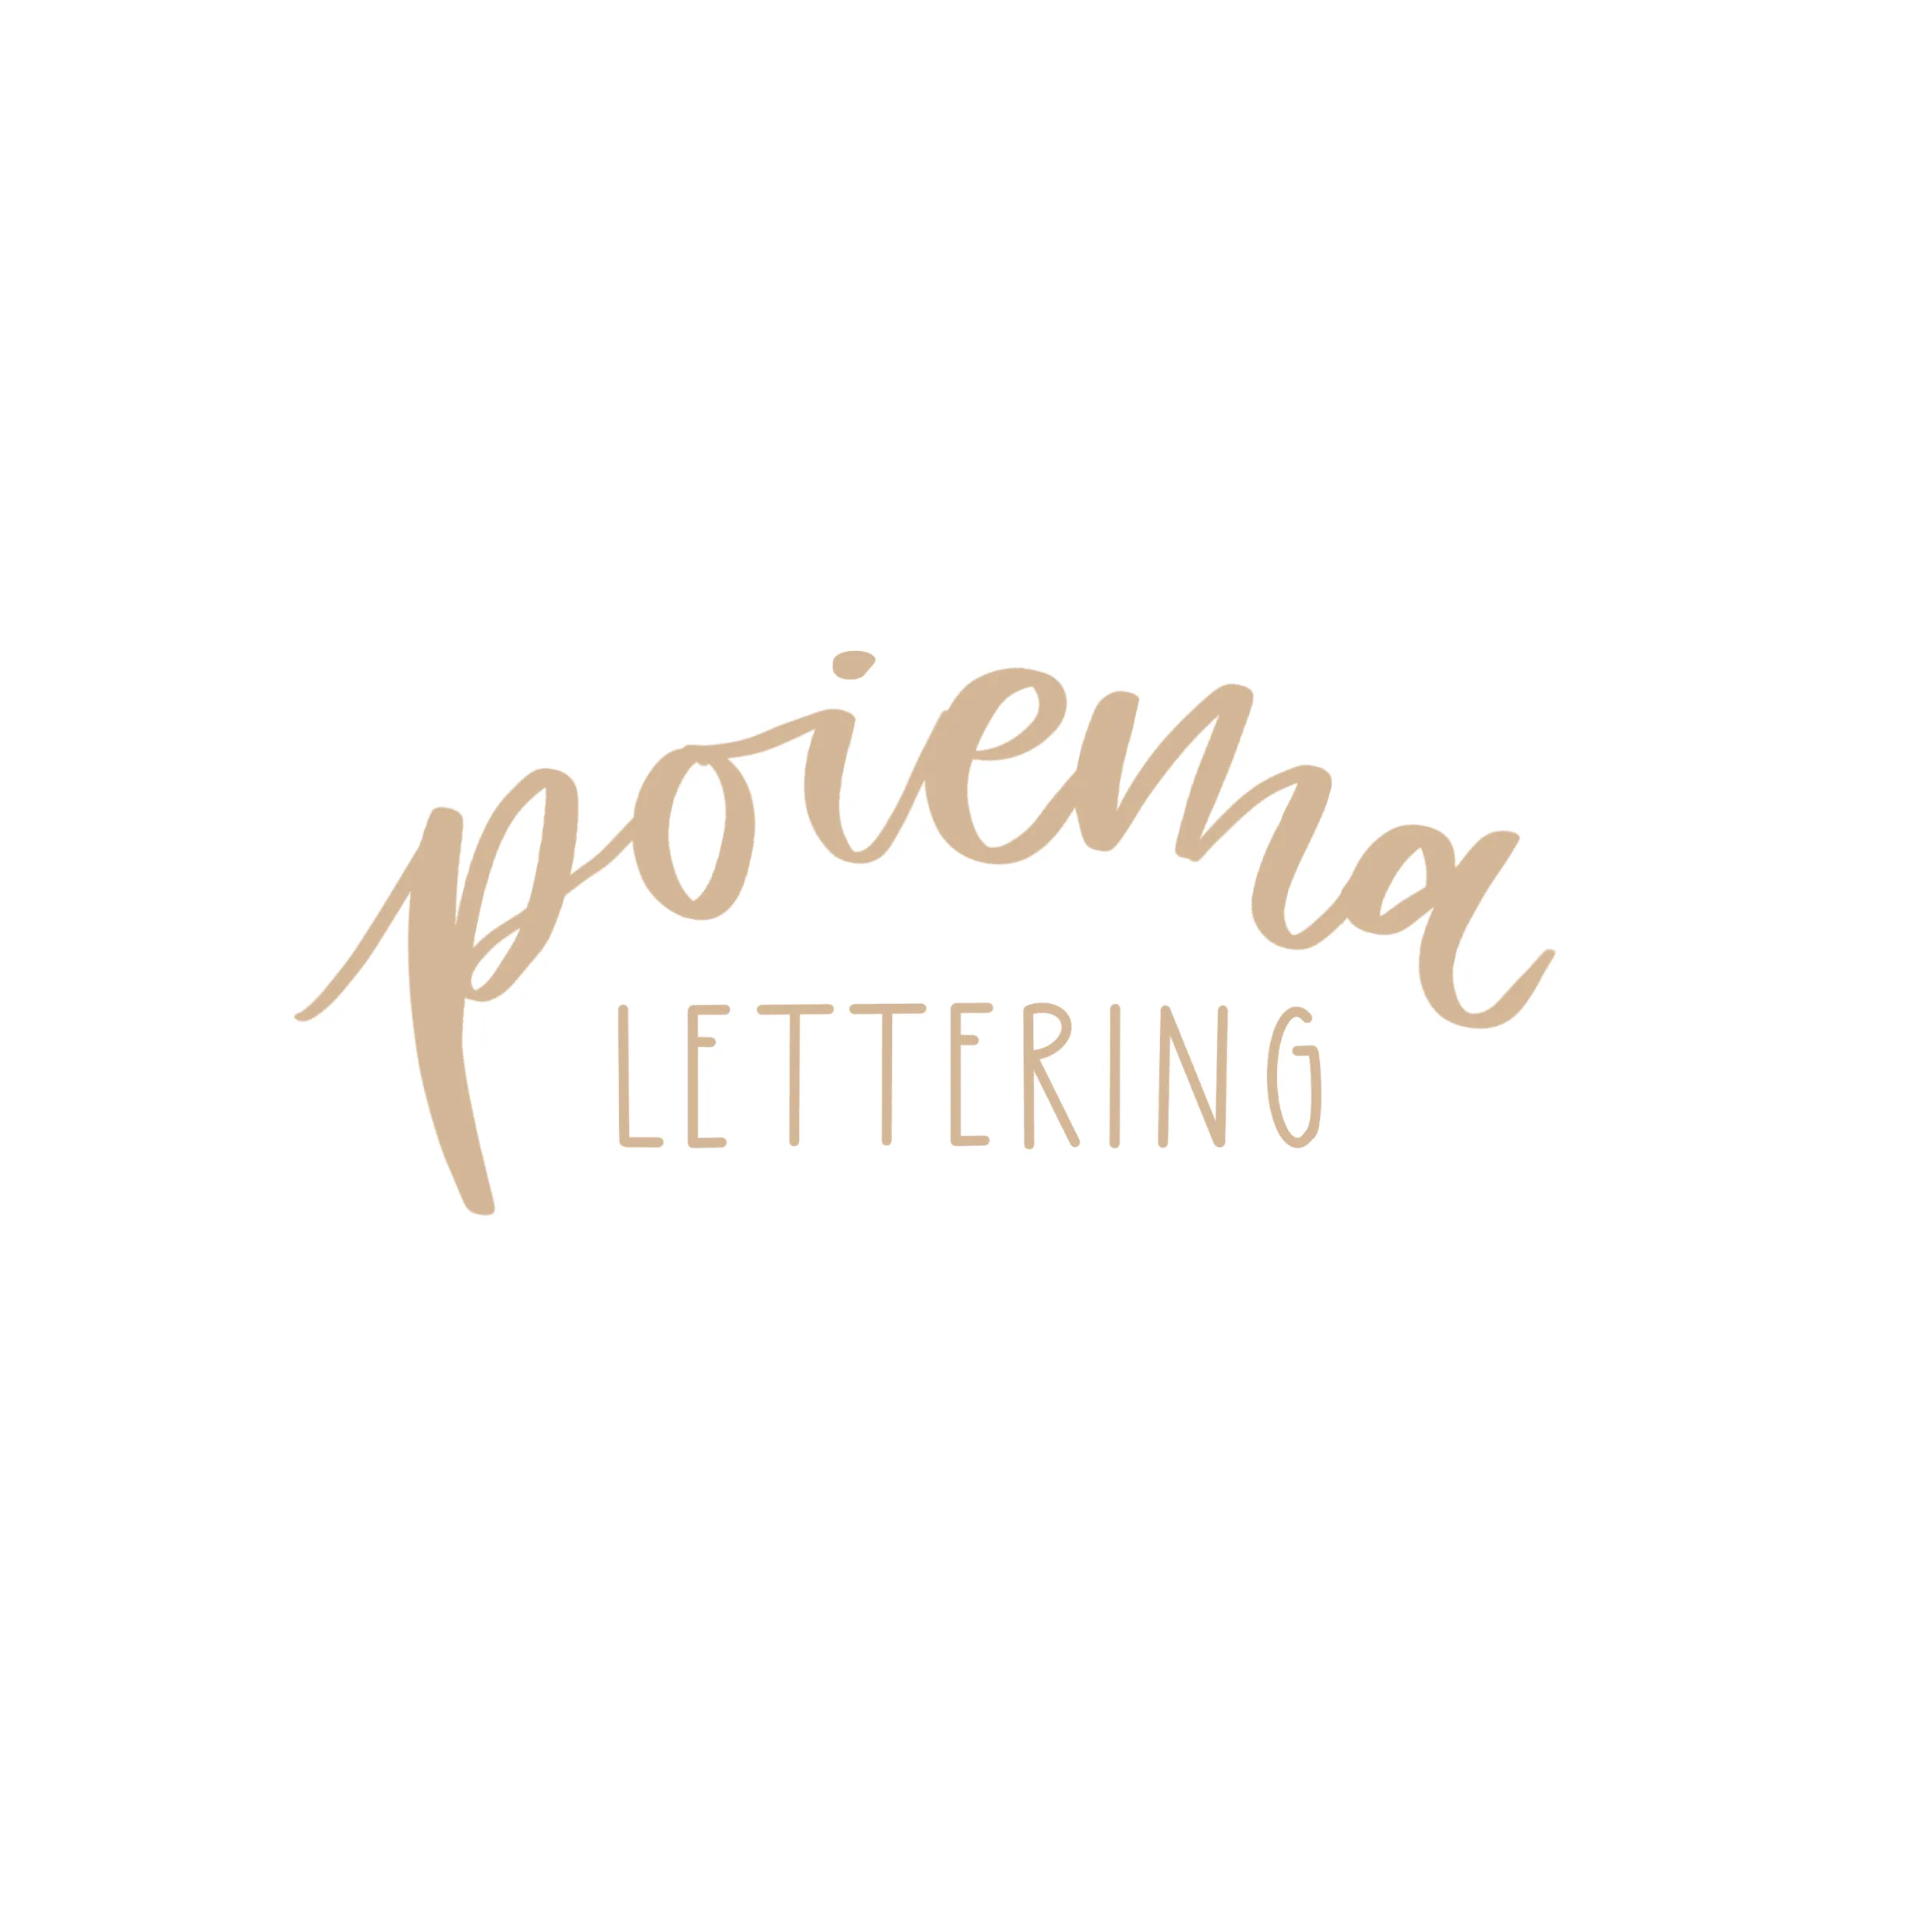 Poiema Lettering Logo